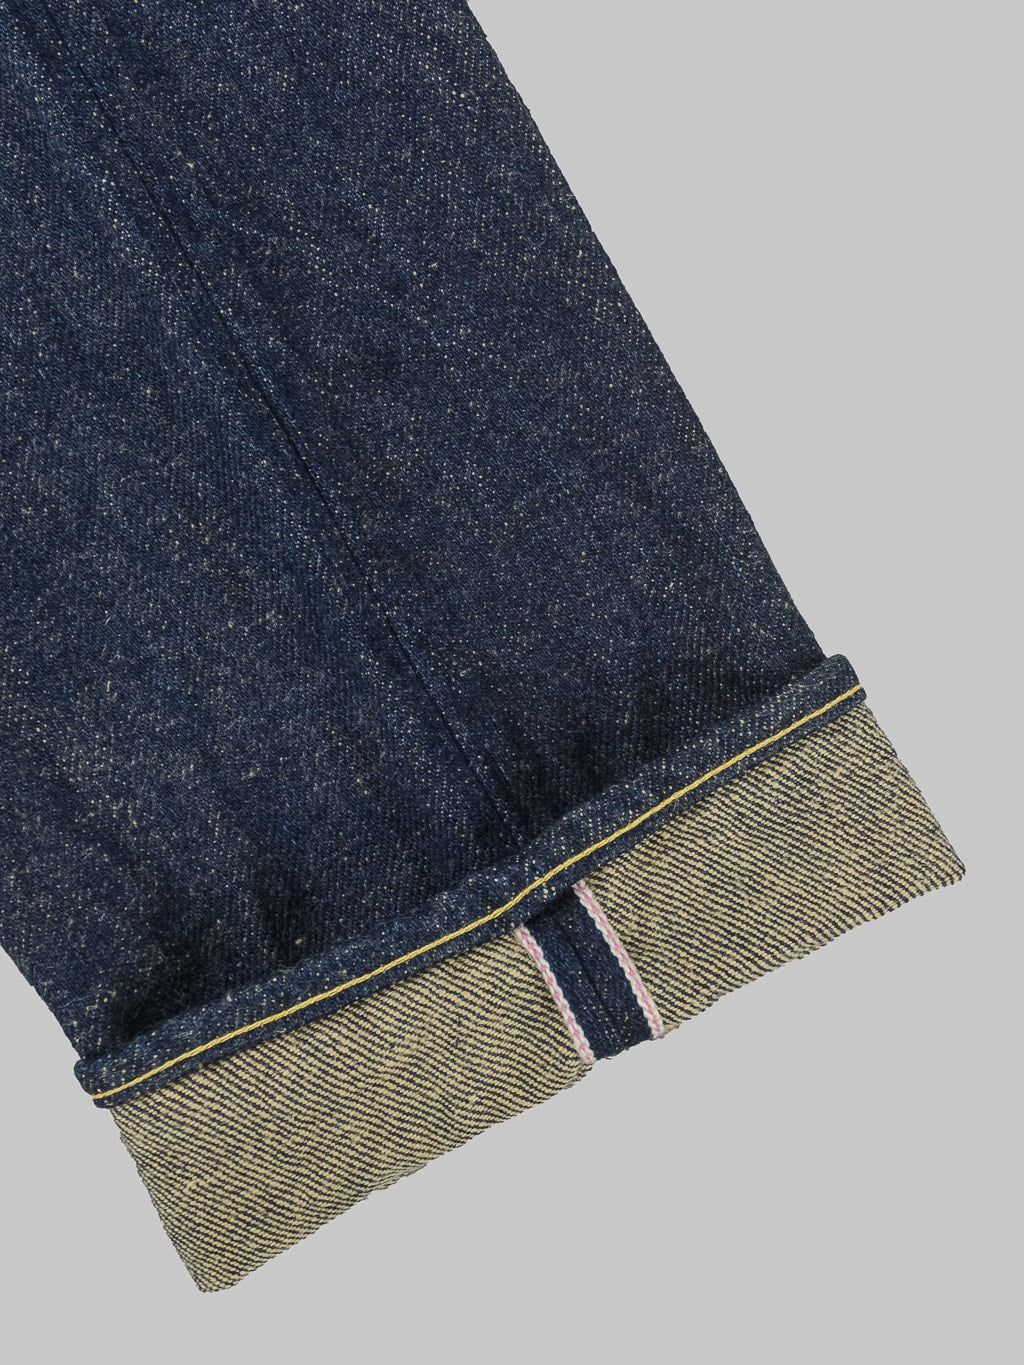 ONI Denim 622ZR Secret Denim 20oz Relaxed Tapered Jeans selvedge